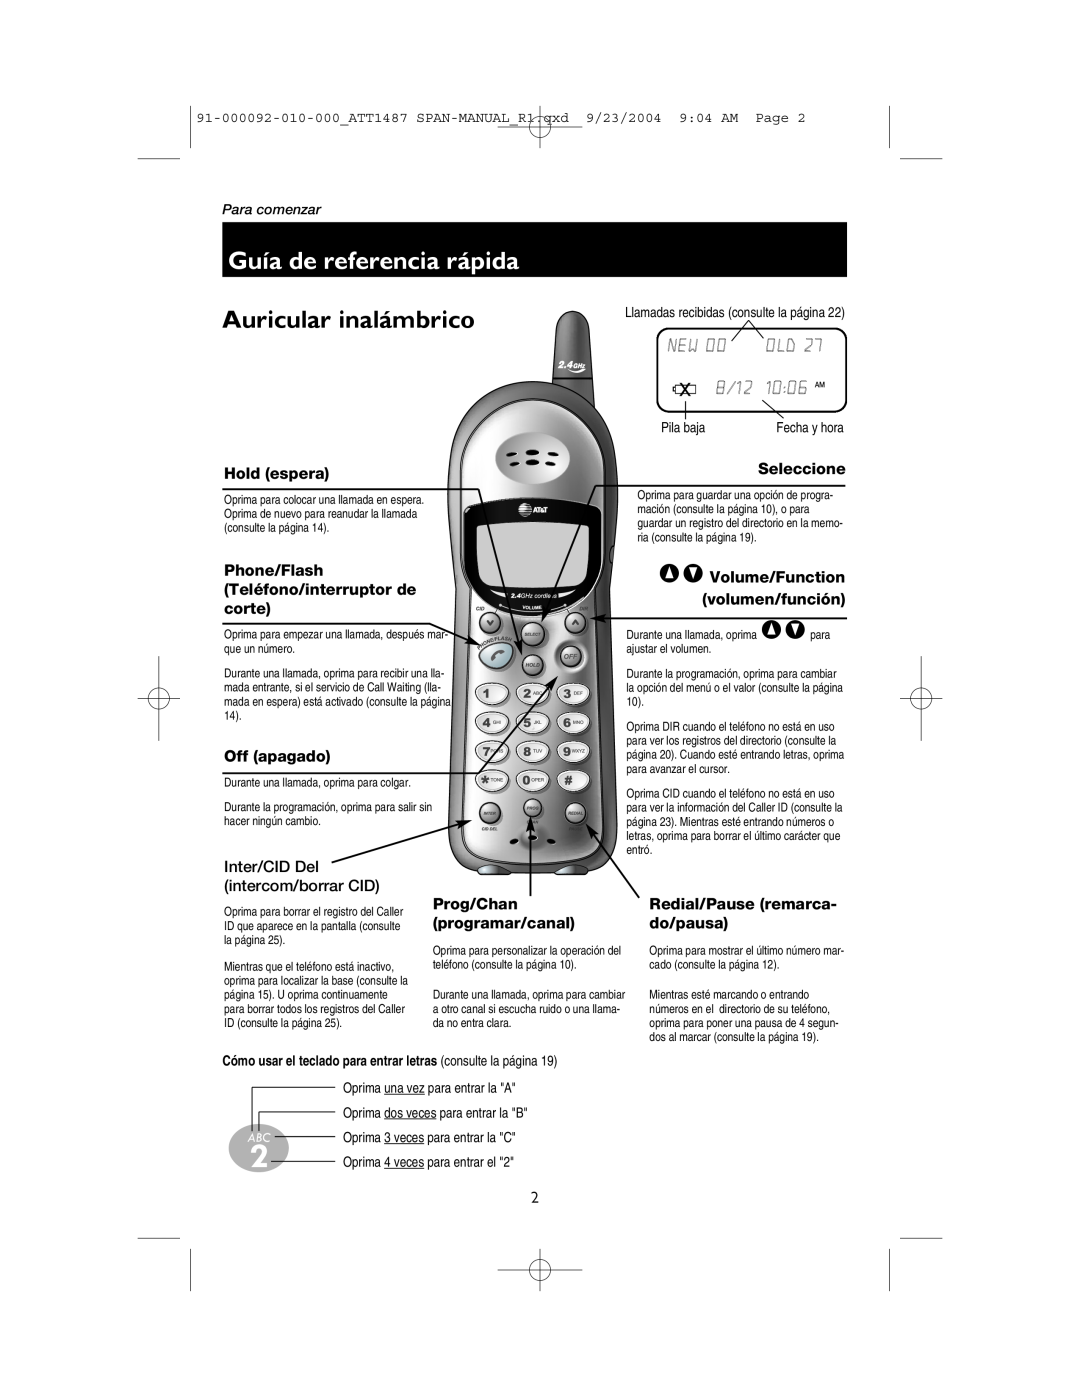 AT&T 1487 Guía de referencia rápida, Auricular inalámbrico, 8/12, 1006 AM, Hold espera, Seleccione, Phone/Flash, corte 